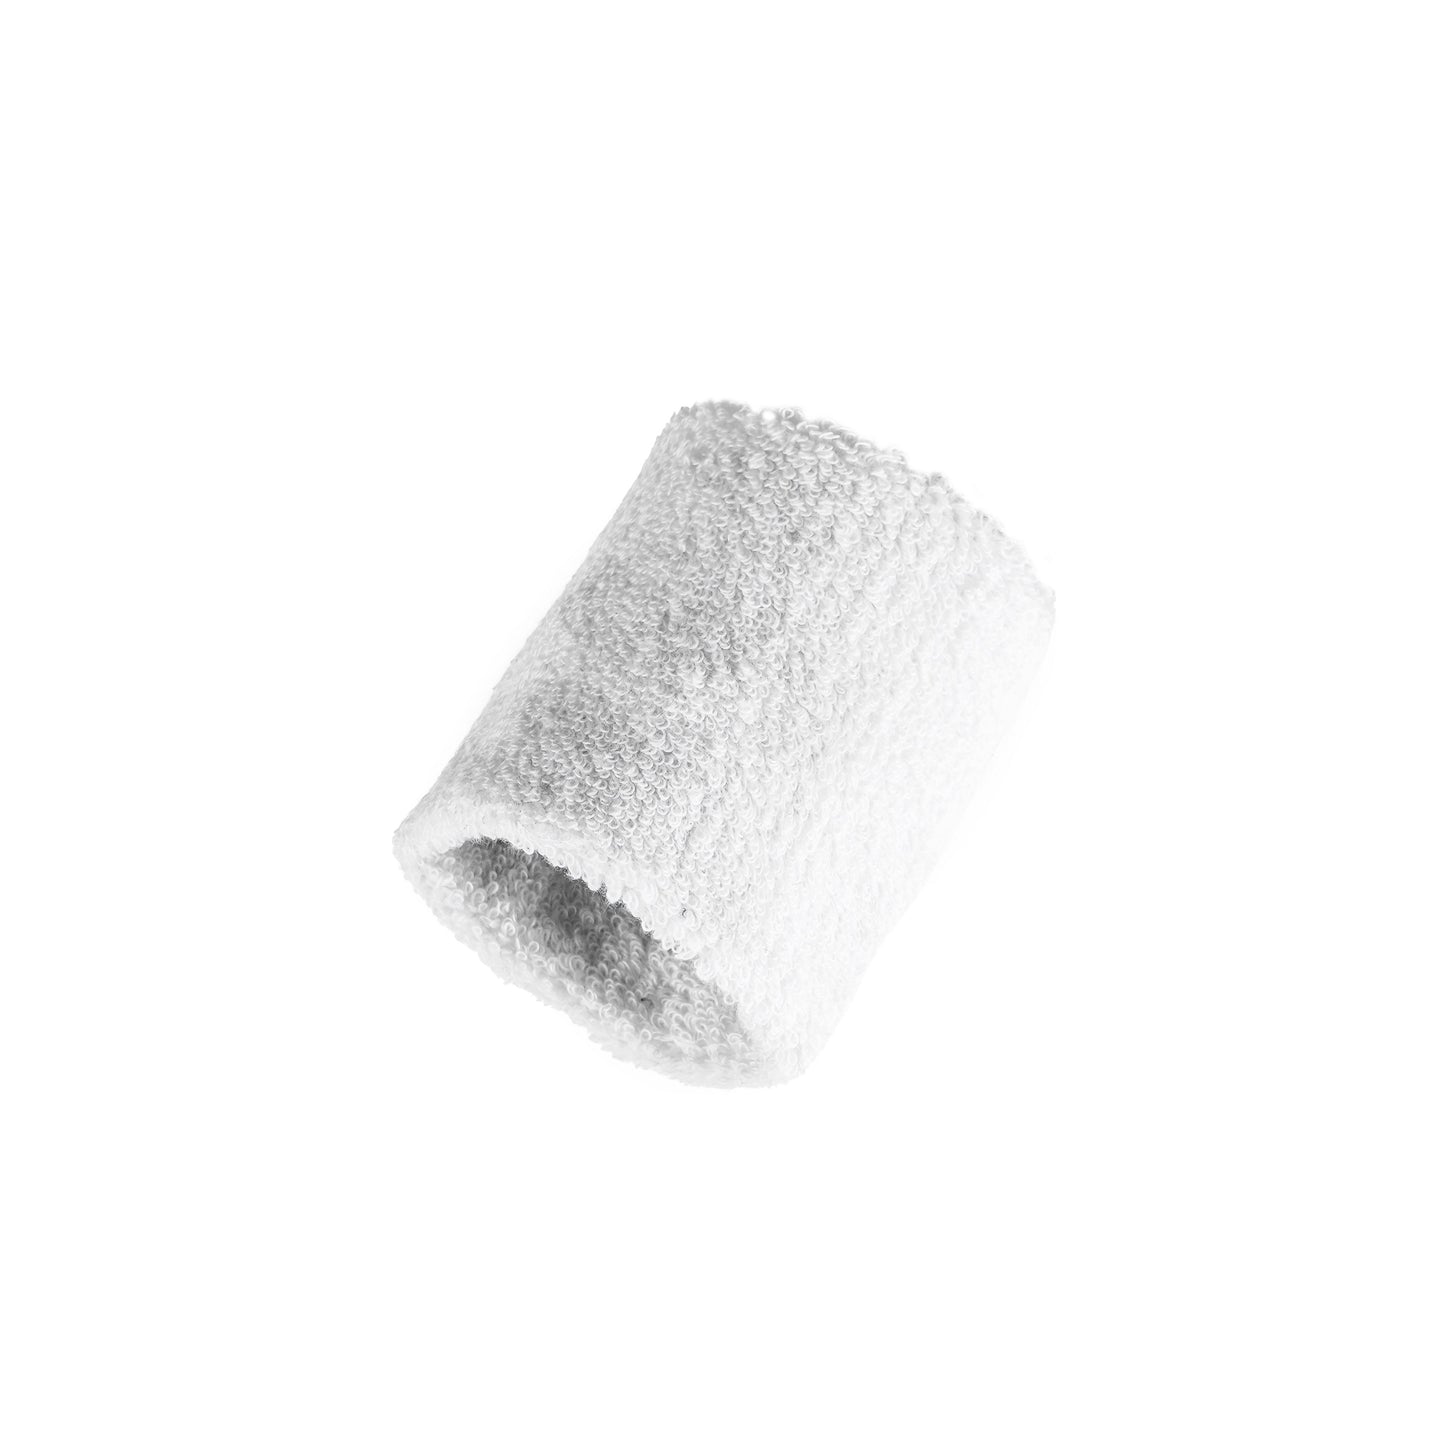 AZA Wristband Basic - White